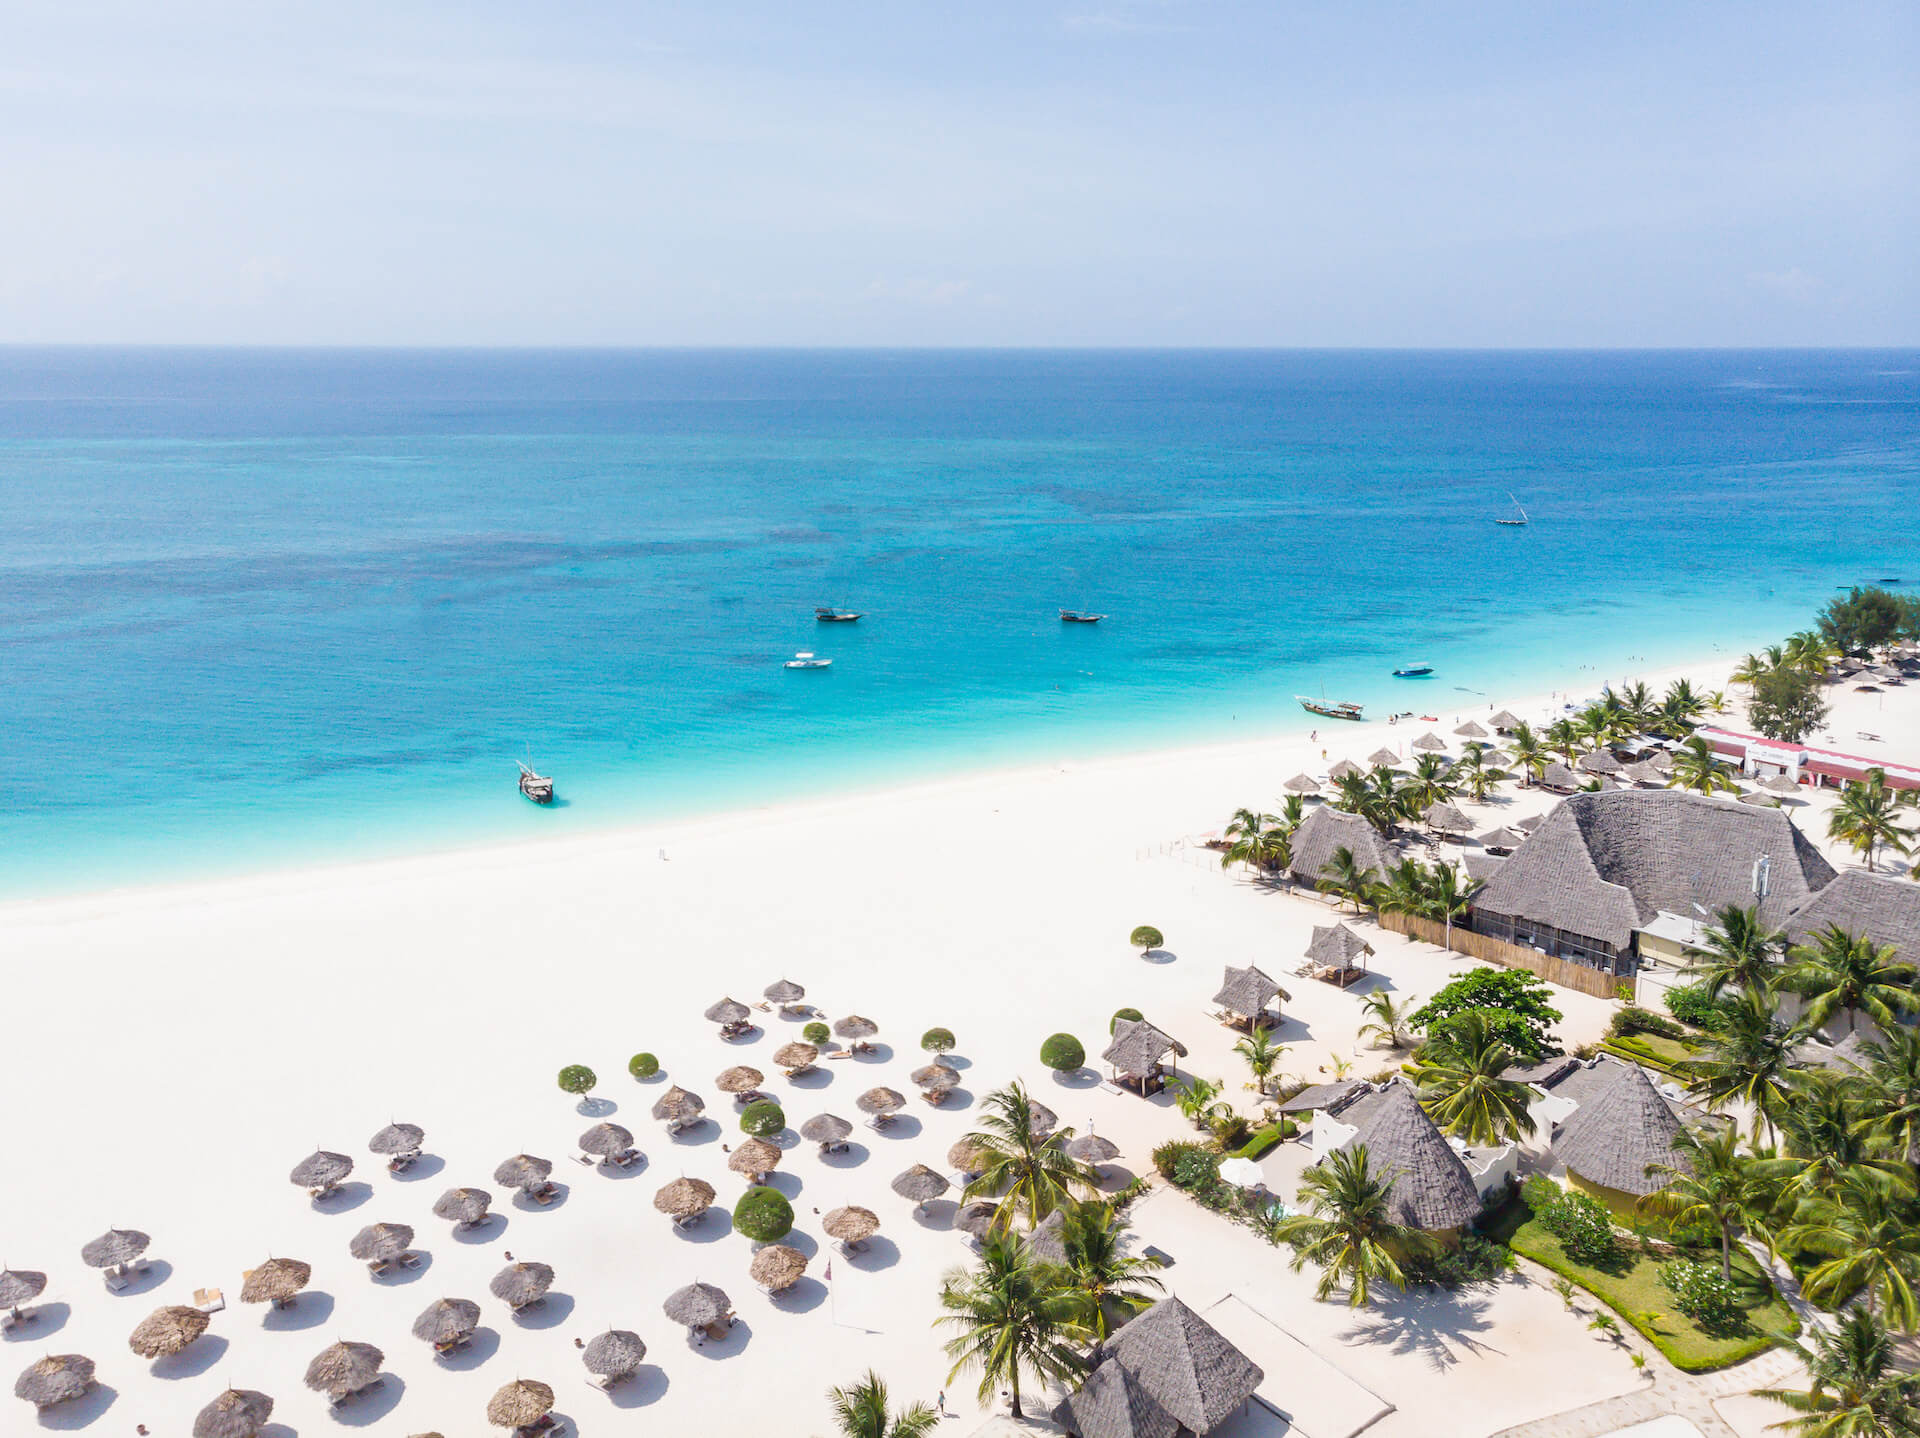 Strand vom Hotel Gold Zanzibar mit Strandschirmen, weissem Sand und türkisfarbigem Wasser